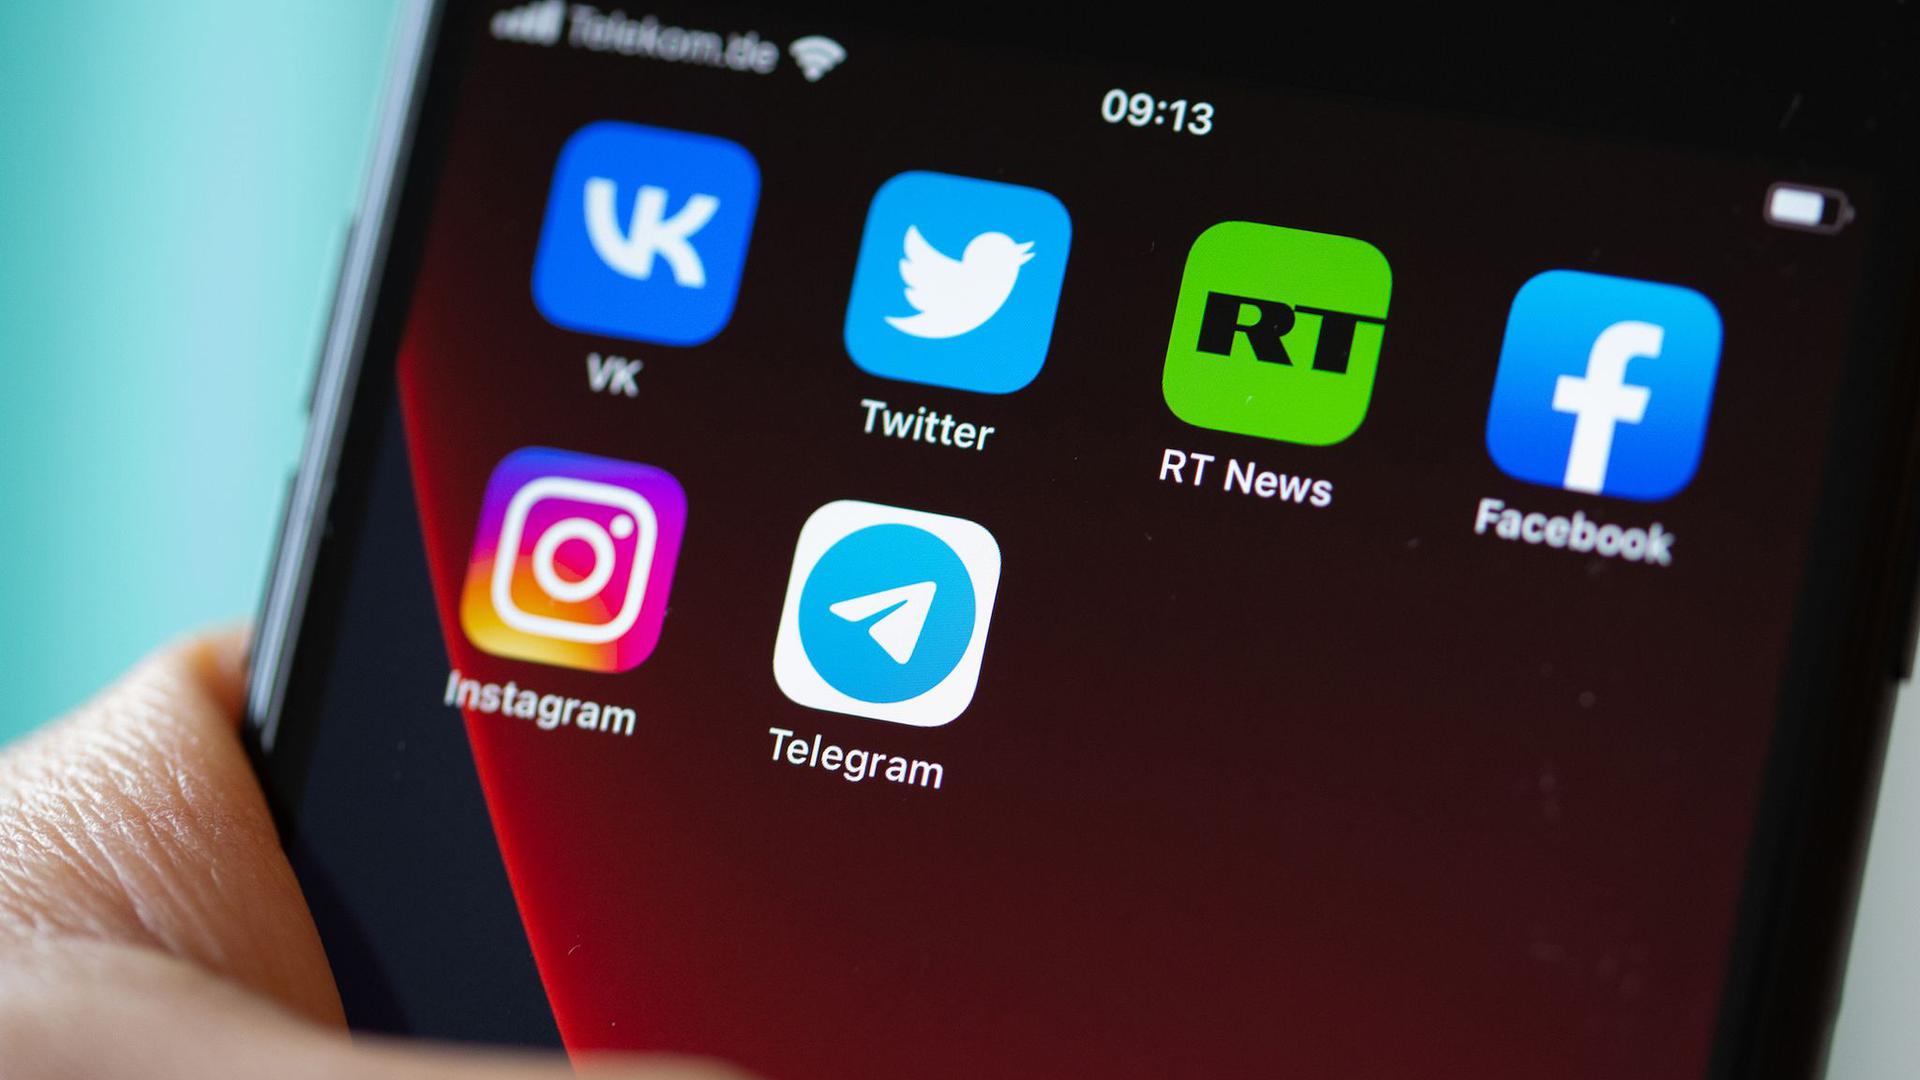 Auf dem Bildschirm eines Smartphones sind die Logos der Apps VKontakte (oben l-r), Twitter, RT News, Facebook, Instagram (unten l-r) und Telegram zu sehen.